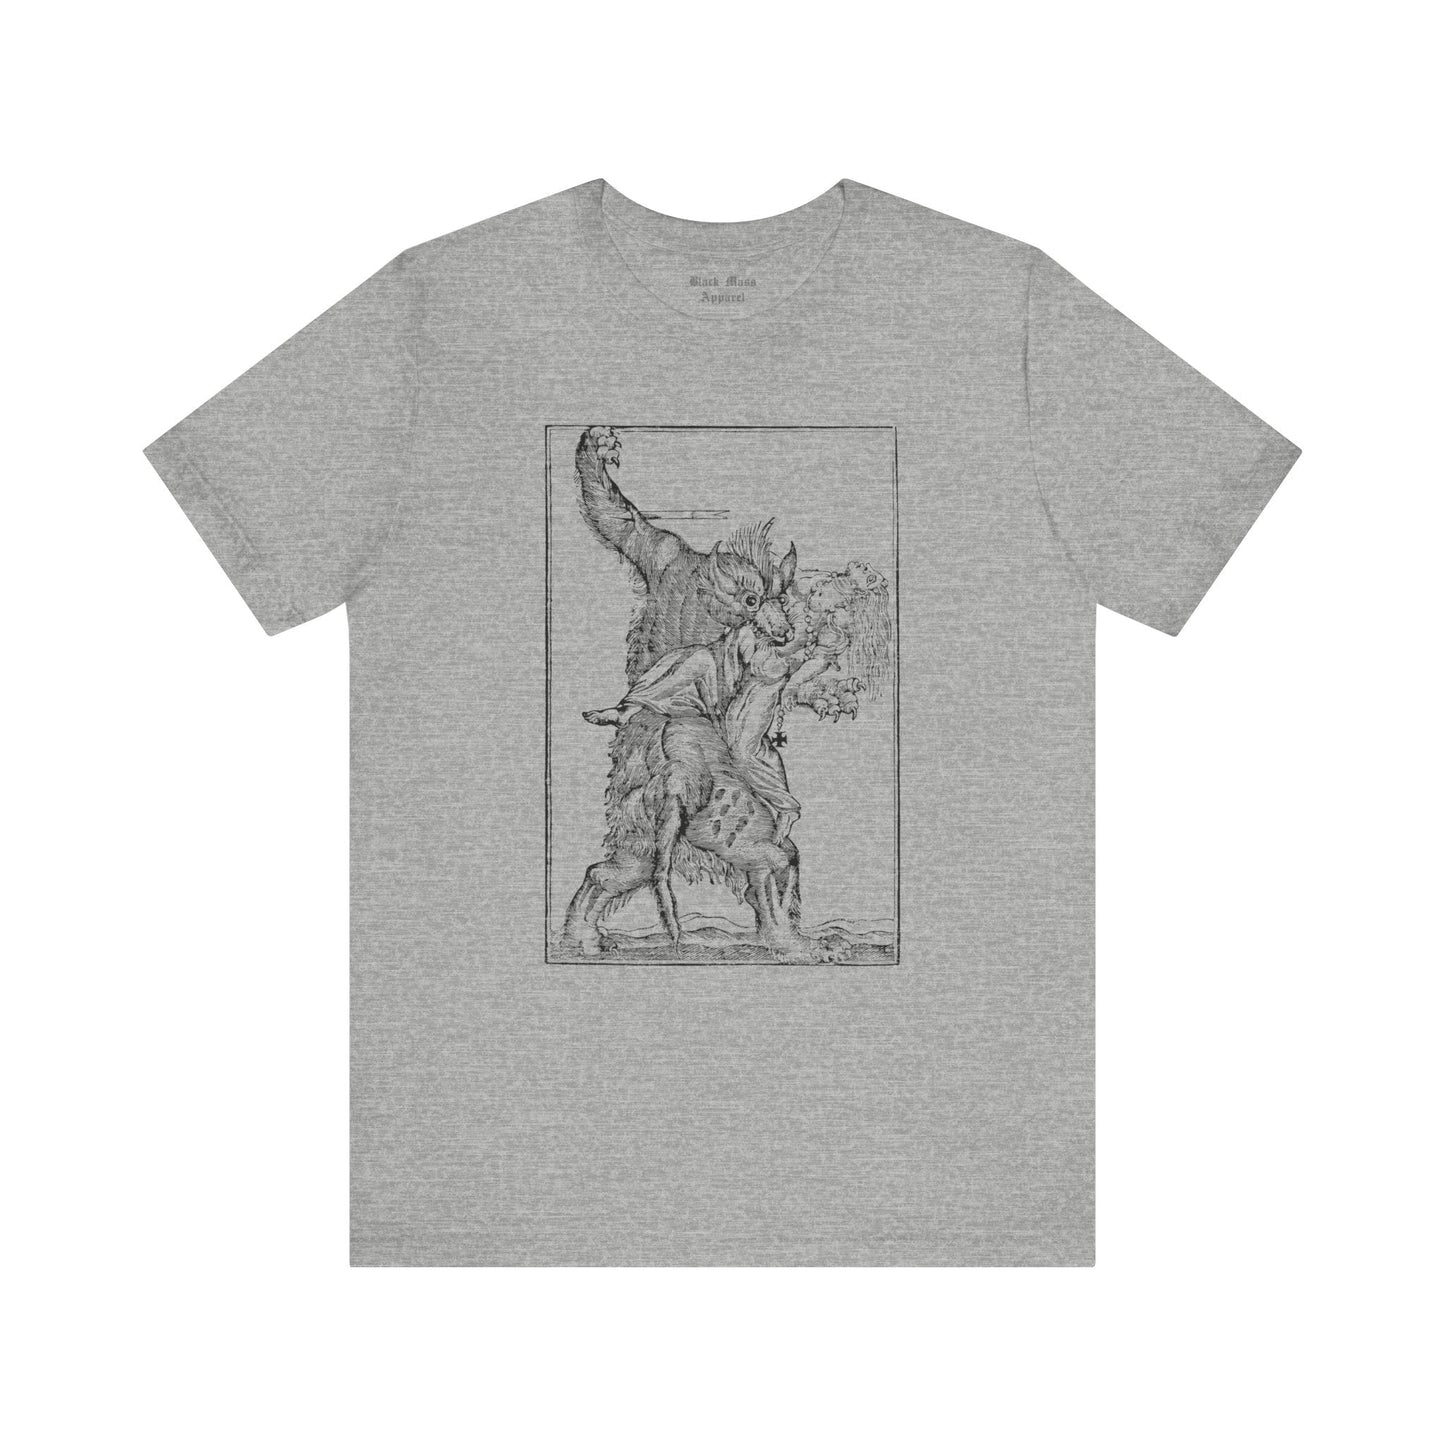 Werewolf I - Black Mass Apparel - T-Shirt